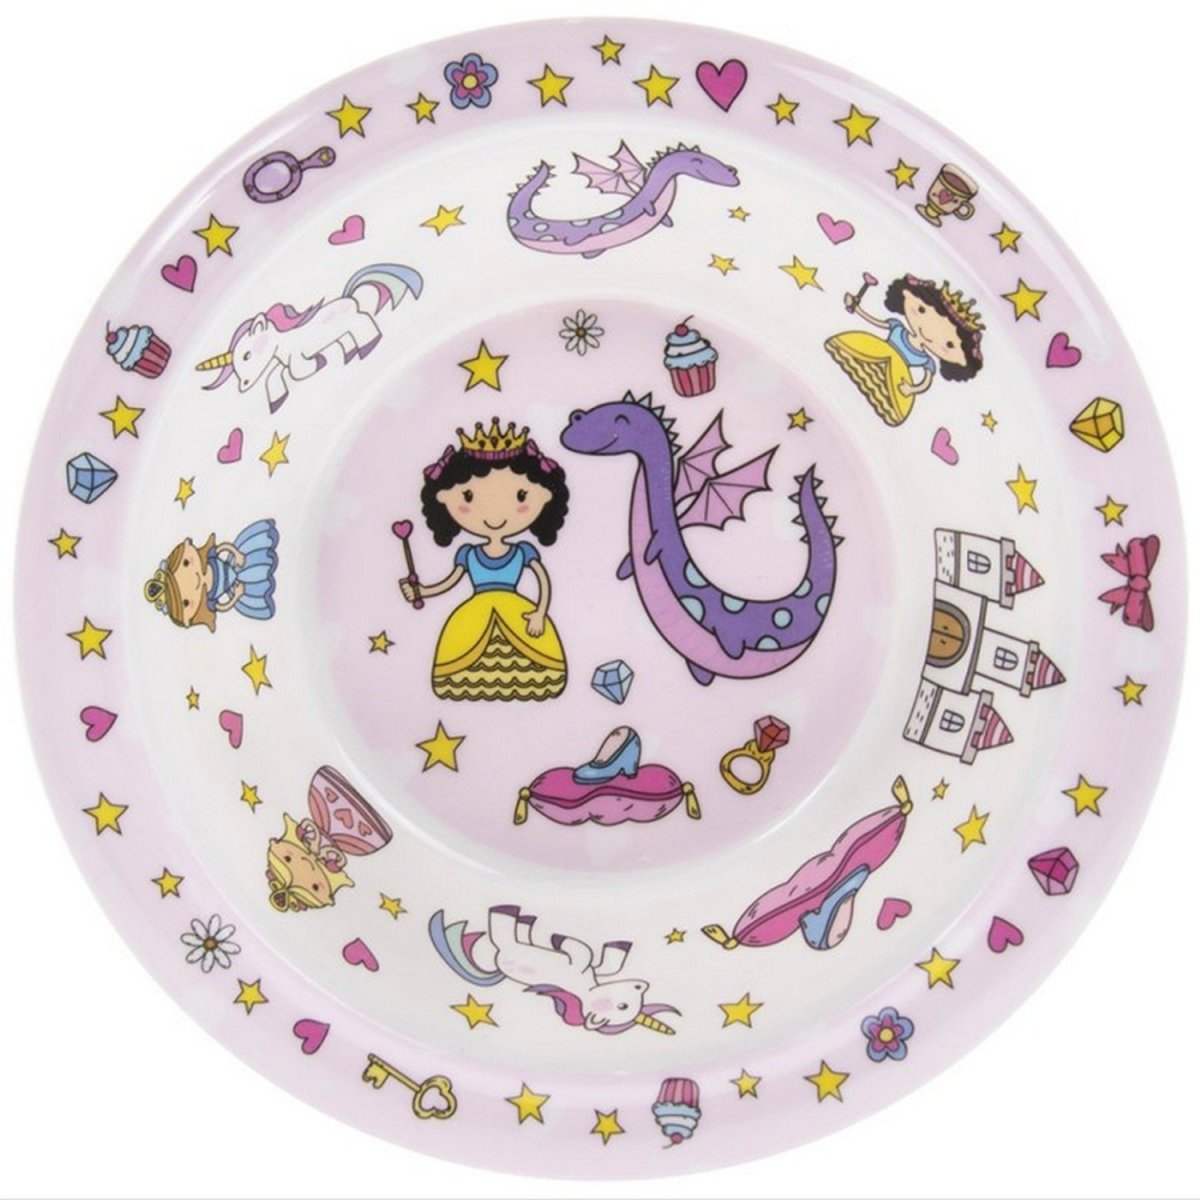 Little Stars Fairy Tale Bowl - Bonnypack